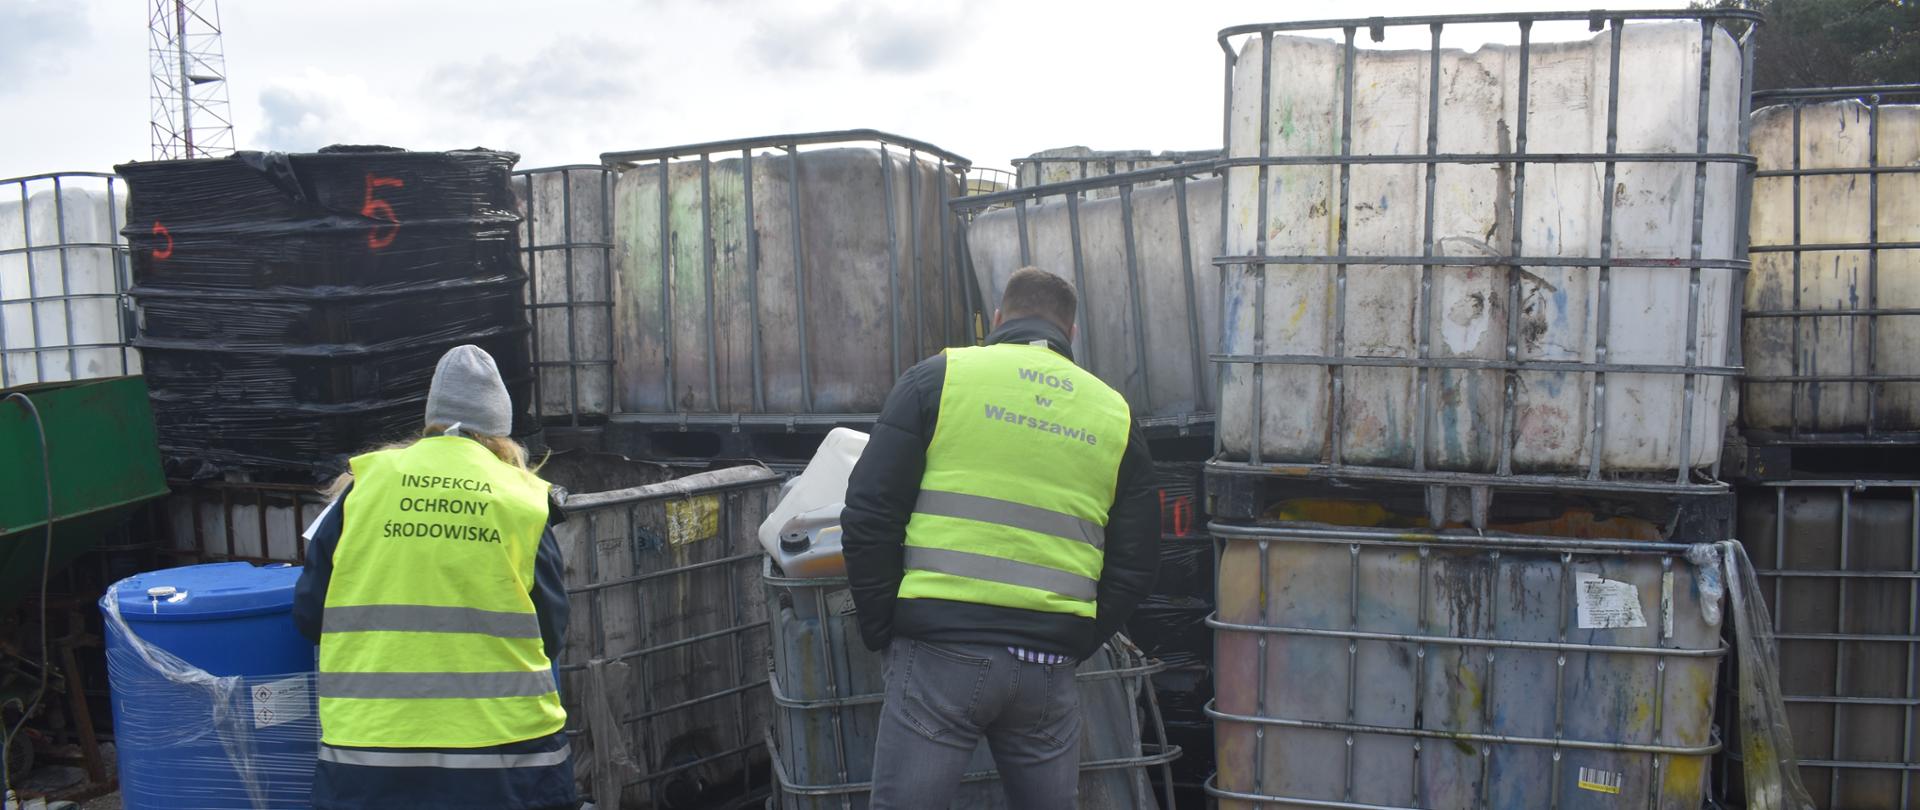 Inspektorzy Wojewódzkiego Inspektoratu Ochrony Środowiska w Warszawie prowadzą inspekcję plastikowych pojemników o pojemności 1000l zgromadzonych na otwartej przestrzeni w miejscu do tego nie przeznaczonym.